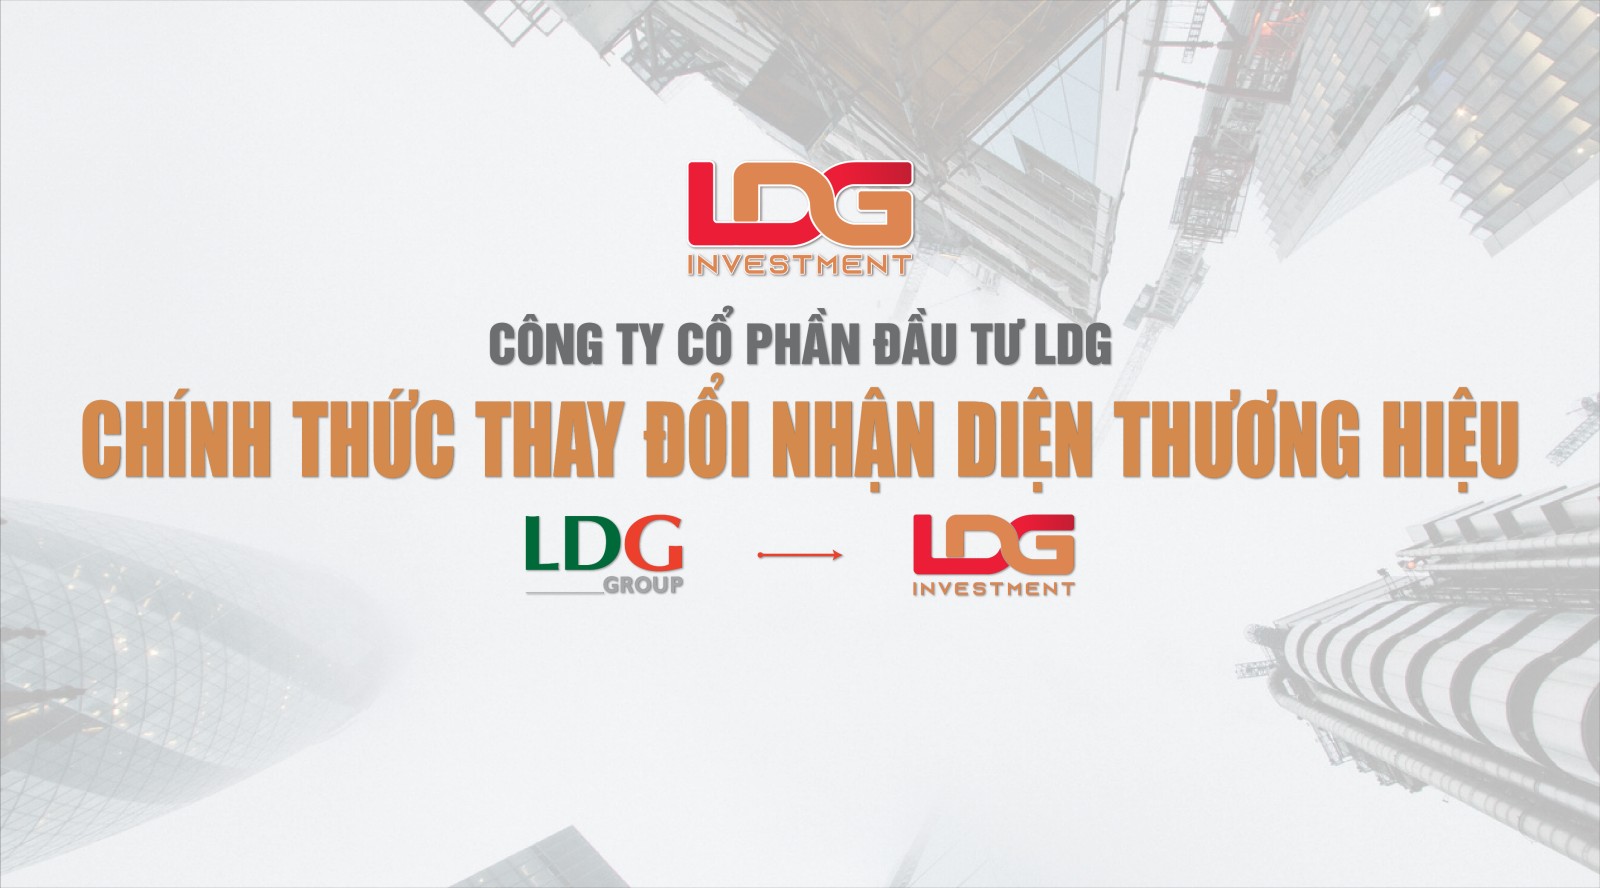 Công ty CP Đầu tư LDG chính thức thay đổi hệ thống nhận diện thương hiệu mới